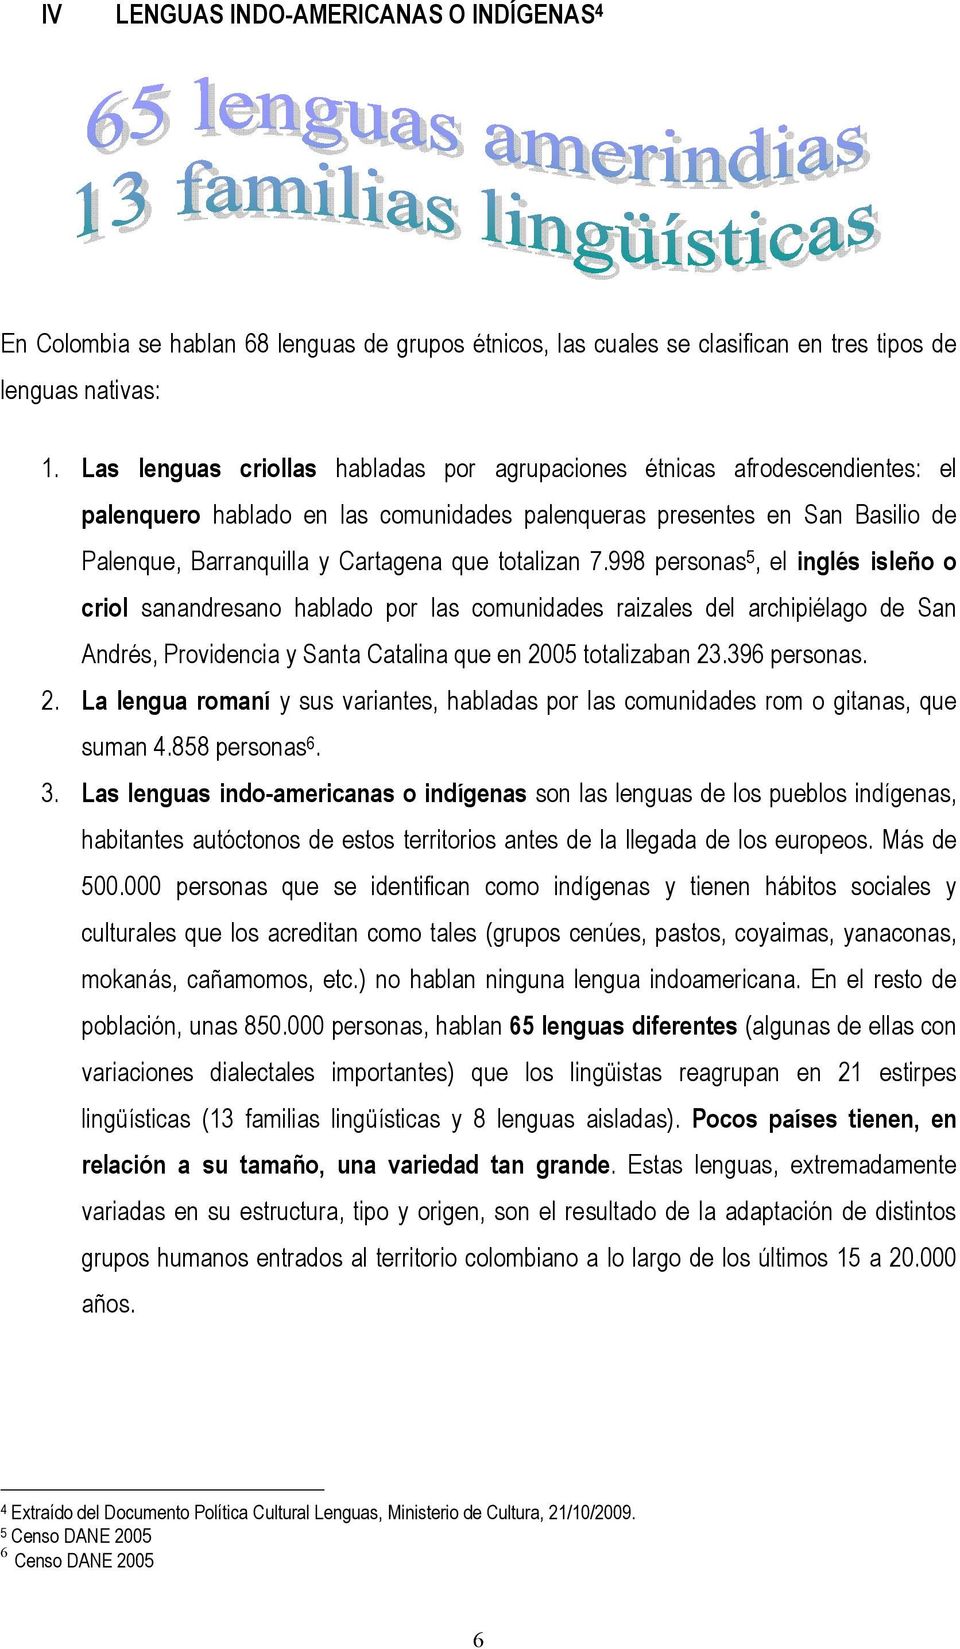 totalizan 7.998 personas 5, el inglés isleño o criol sanandresano hablado por las comunidades raizales del archipiélago de San Andrés, Providencia y Santa Catalina que en 2005 totalizaban 23.